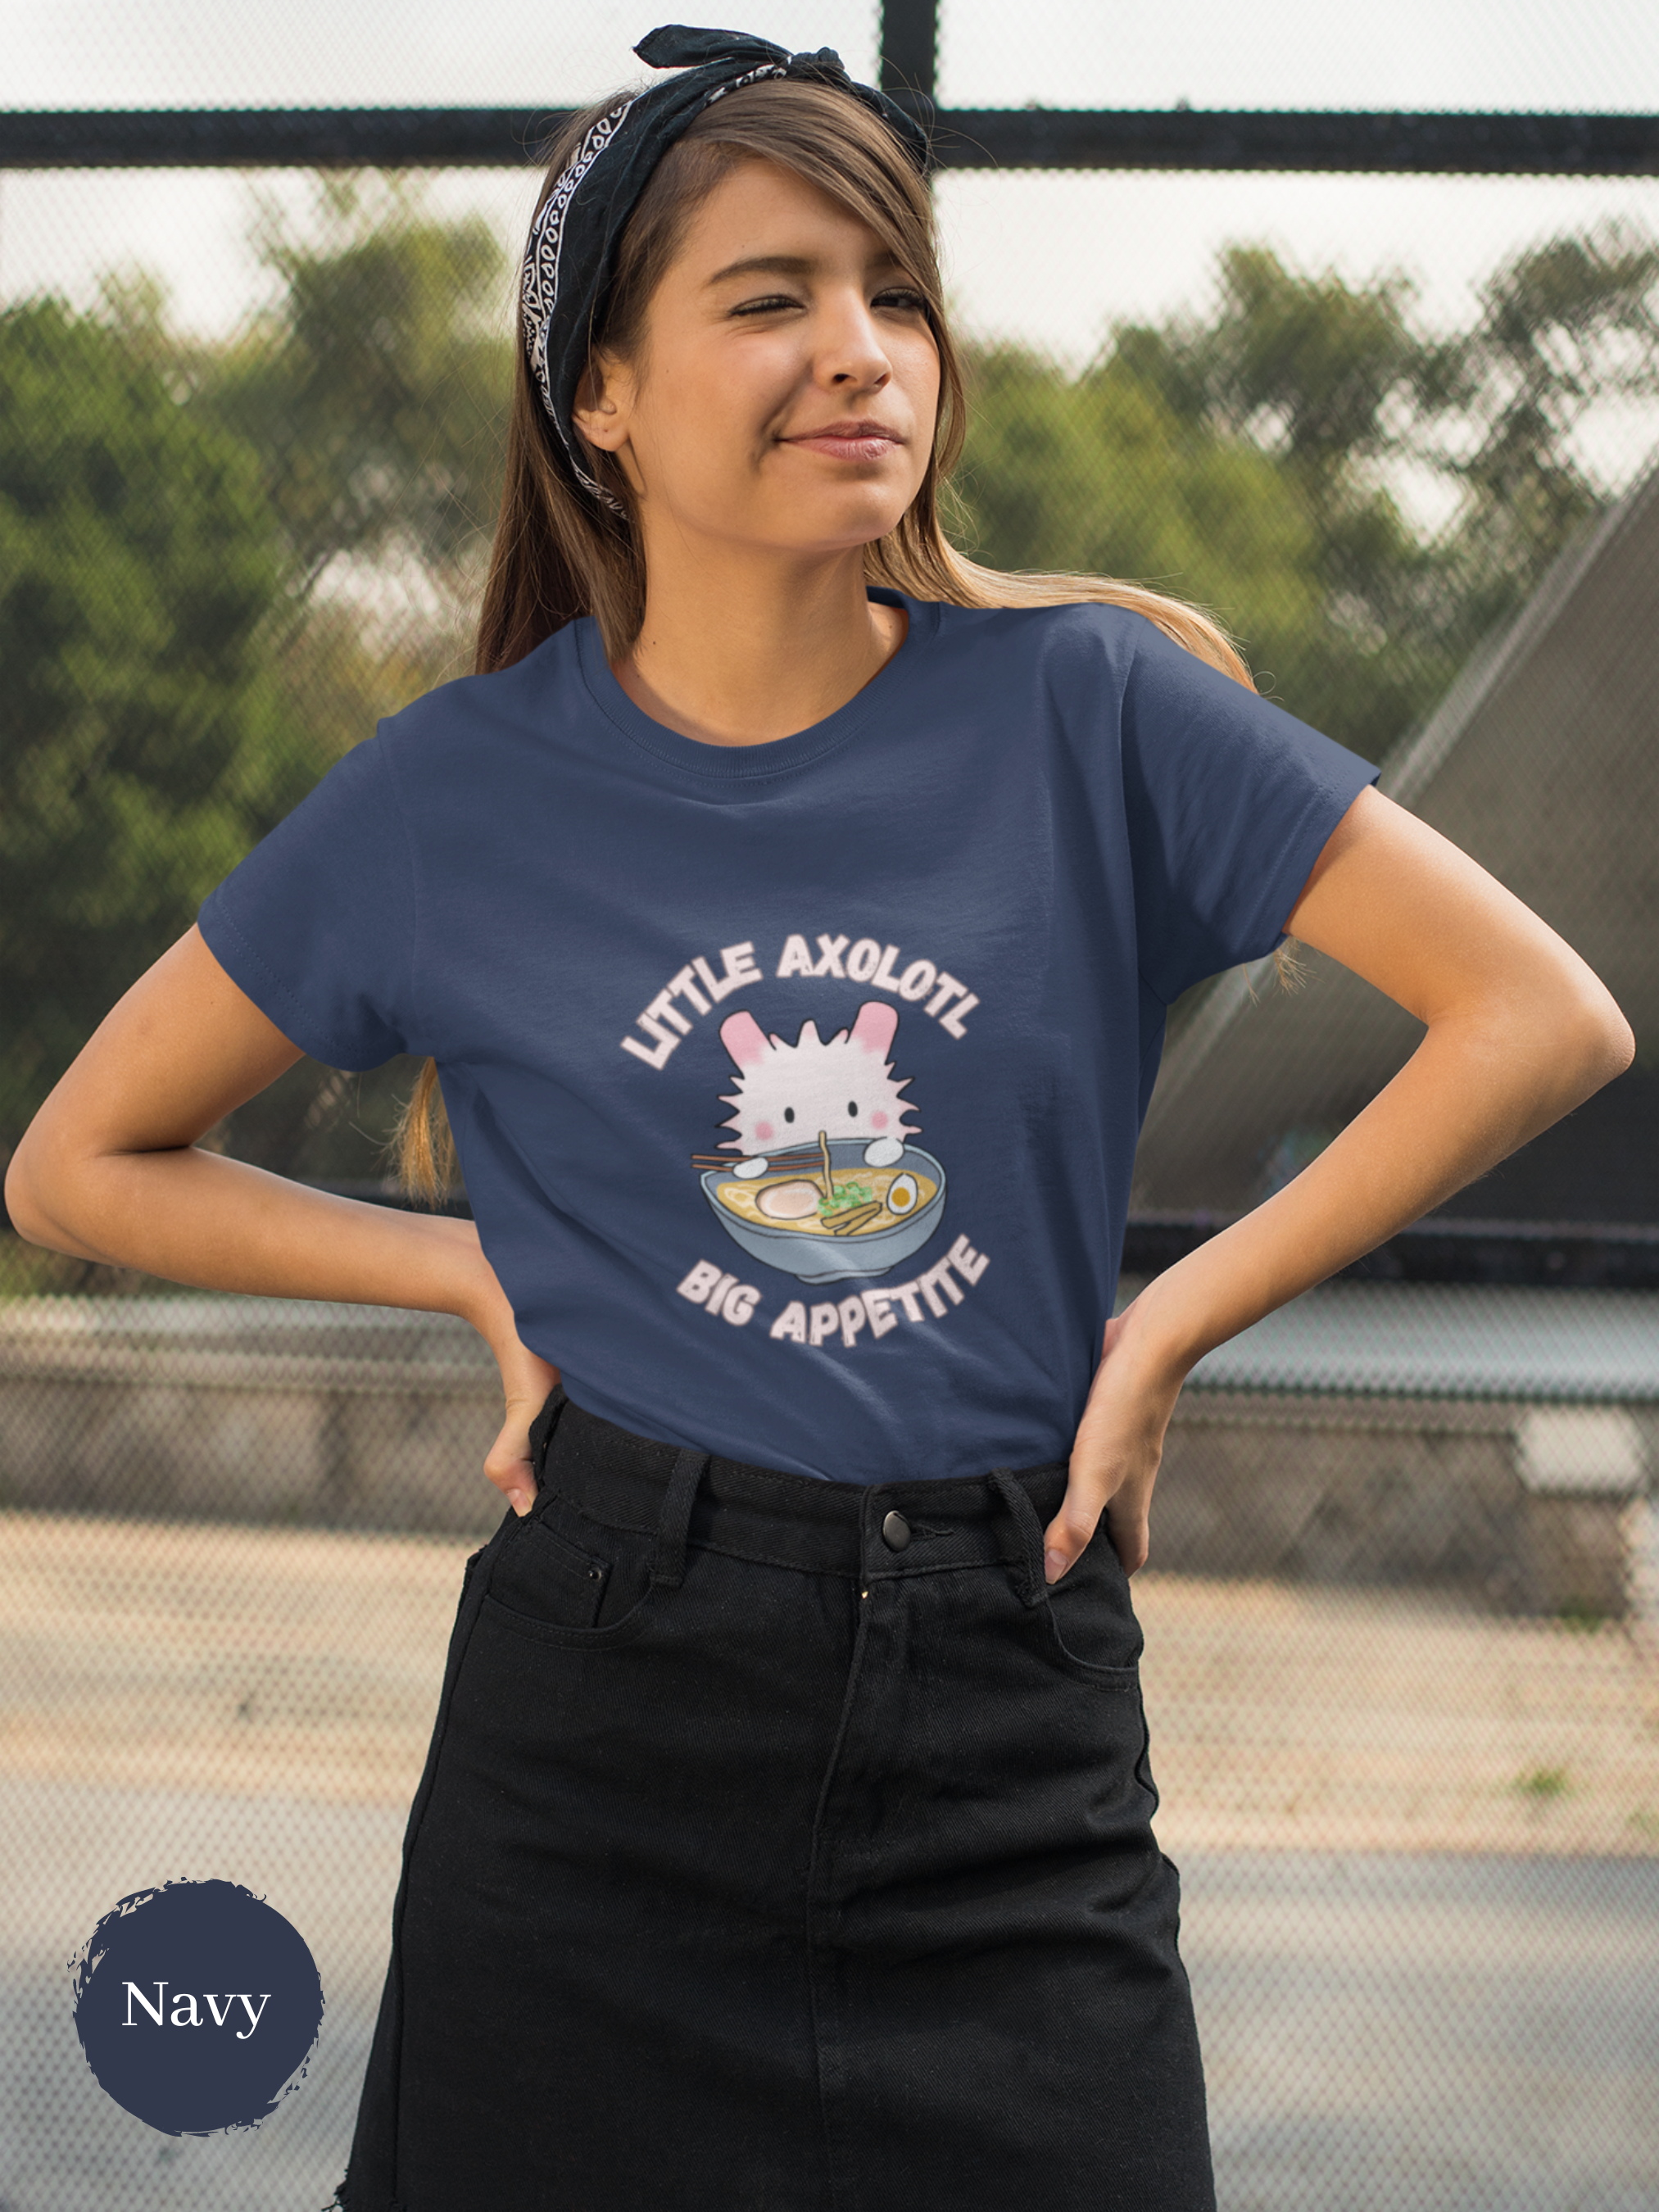 Ramen T-shirt: Little Axolotl Big Appetite - Japanese Foodie Shirt with Ramen Art Illustration